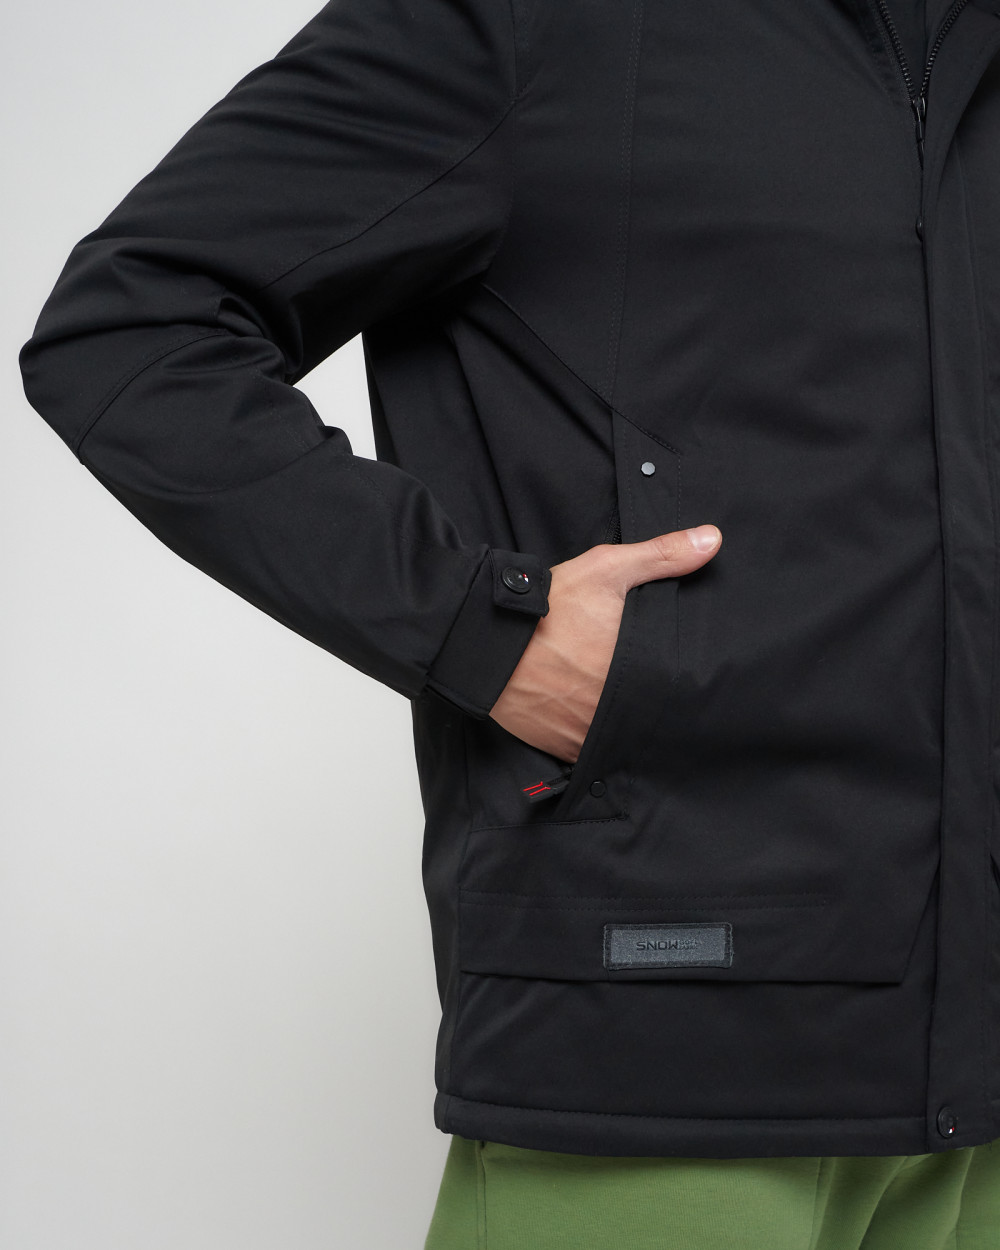 Купить куртку мужскую спортивную весеннюю оптом от производителя недорого в Москве 8599Ch 1